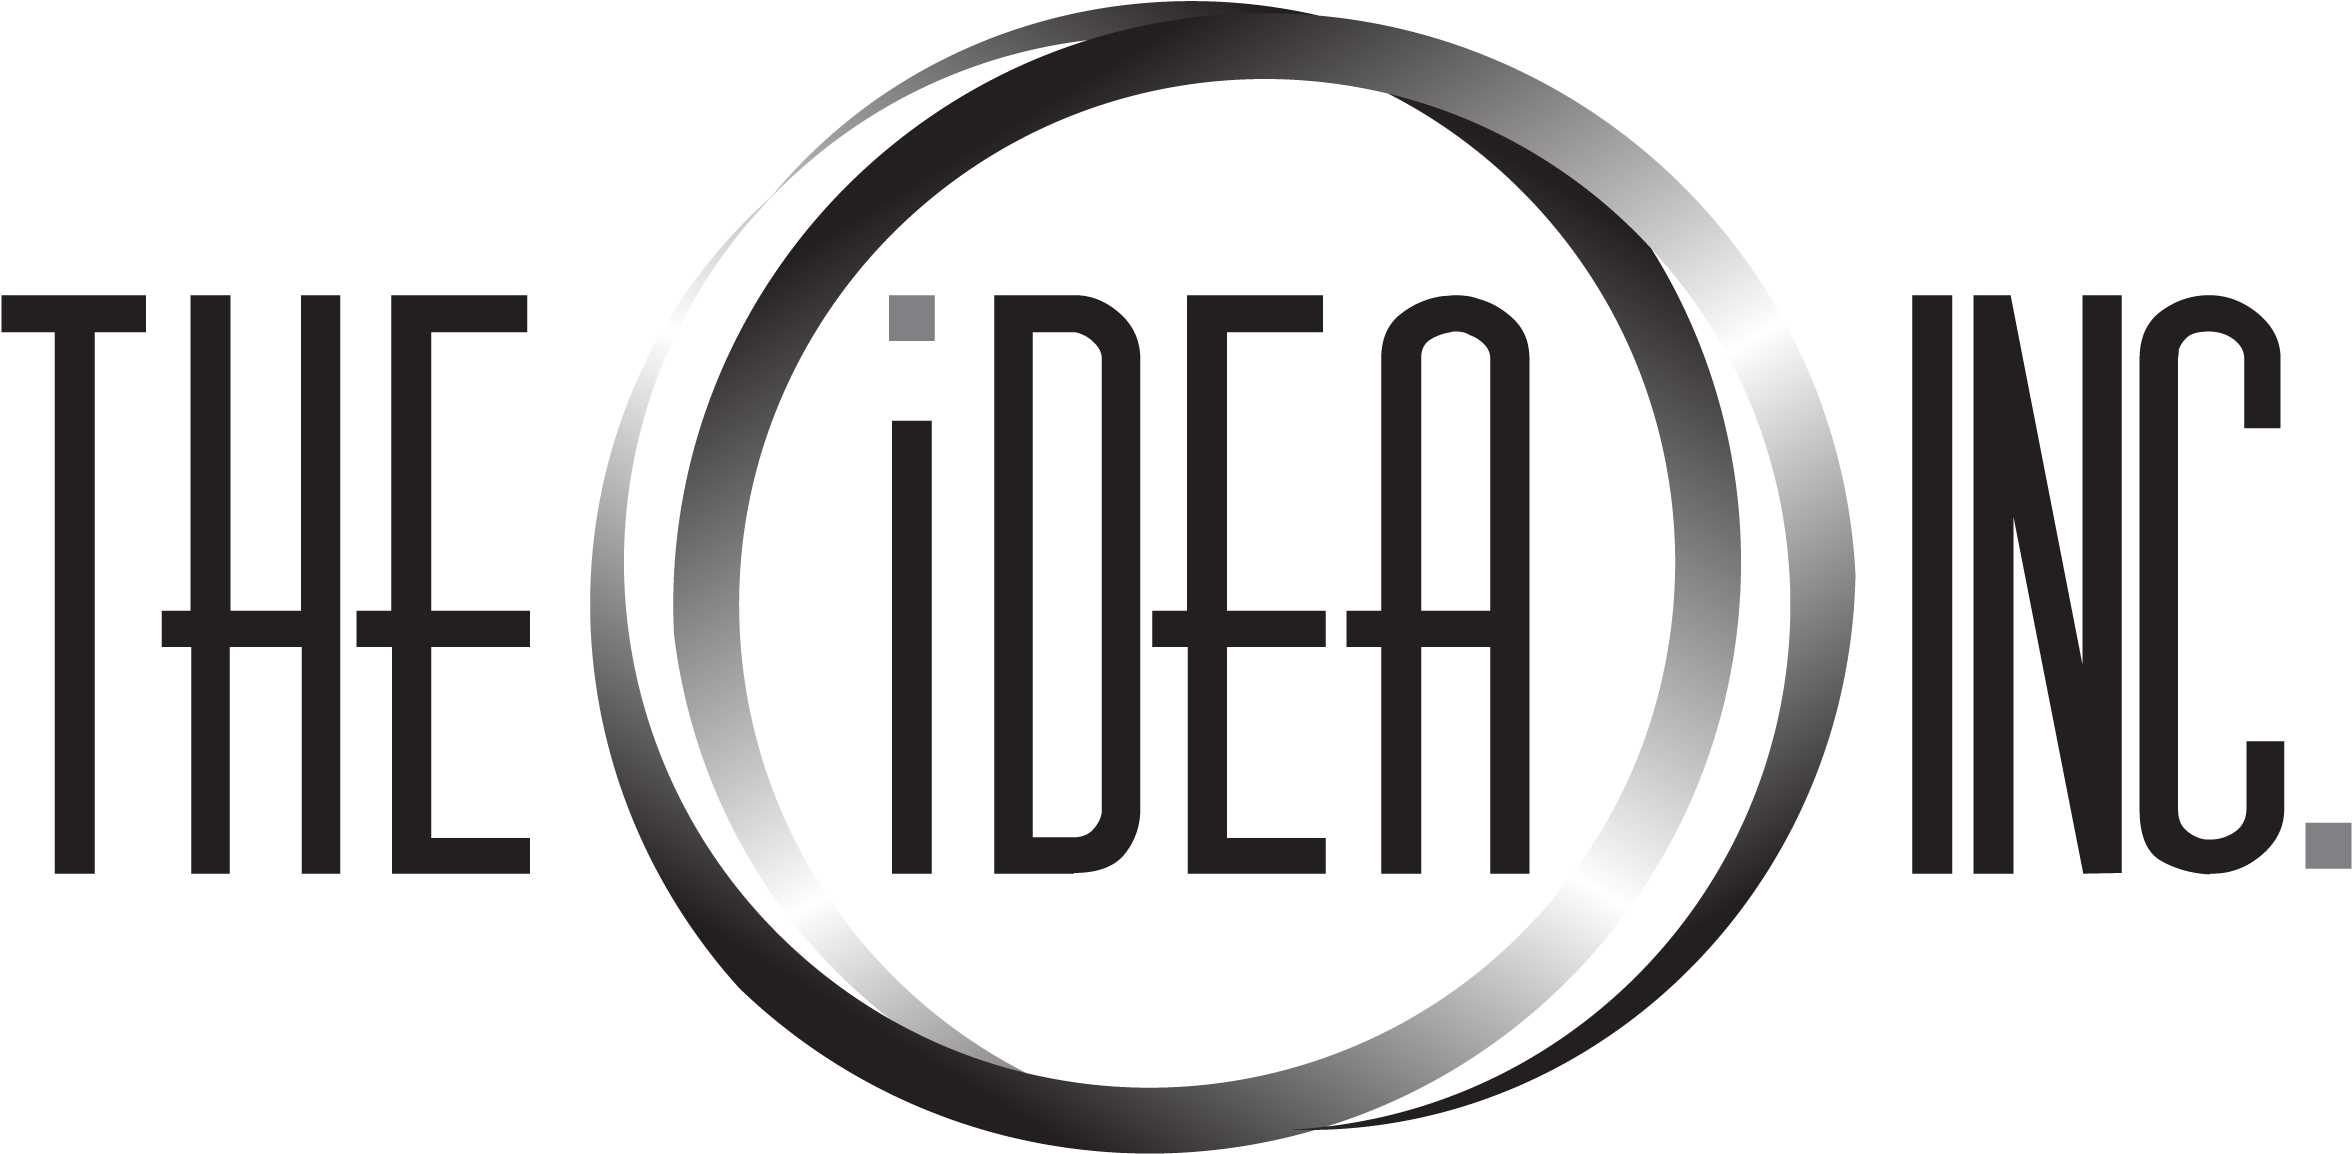 Idea Inc Clipart (2552x1304), Png Download